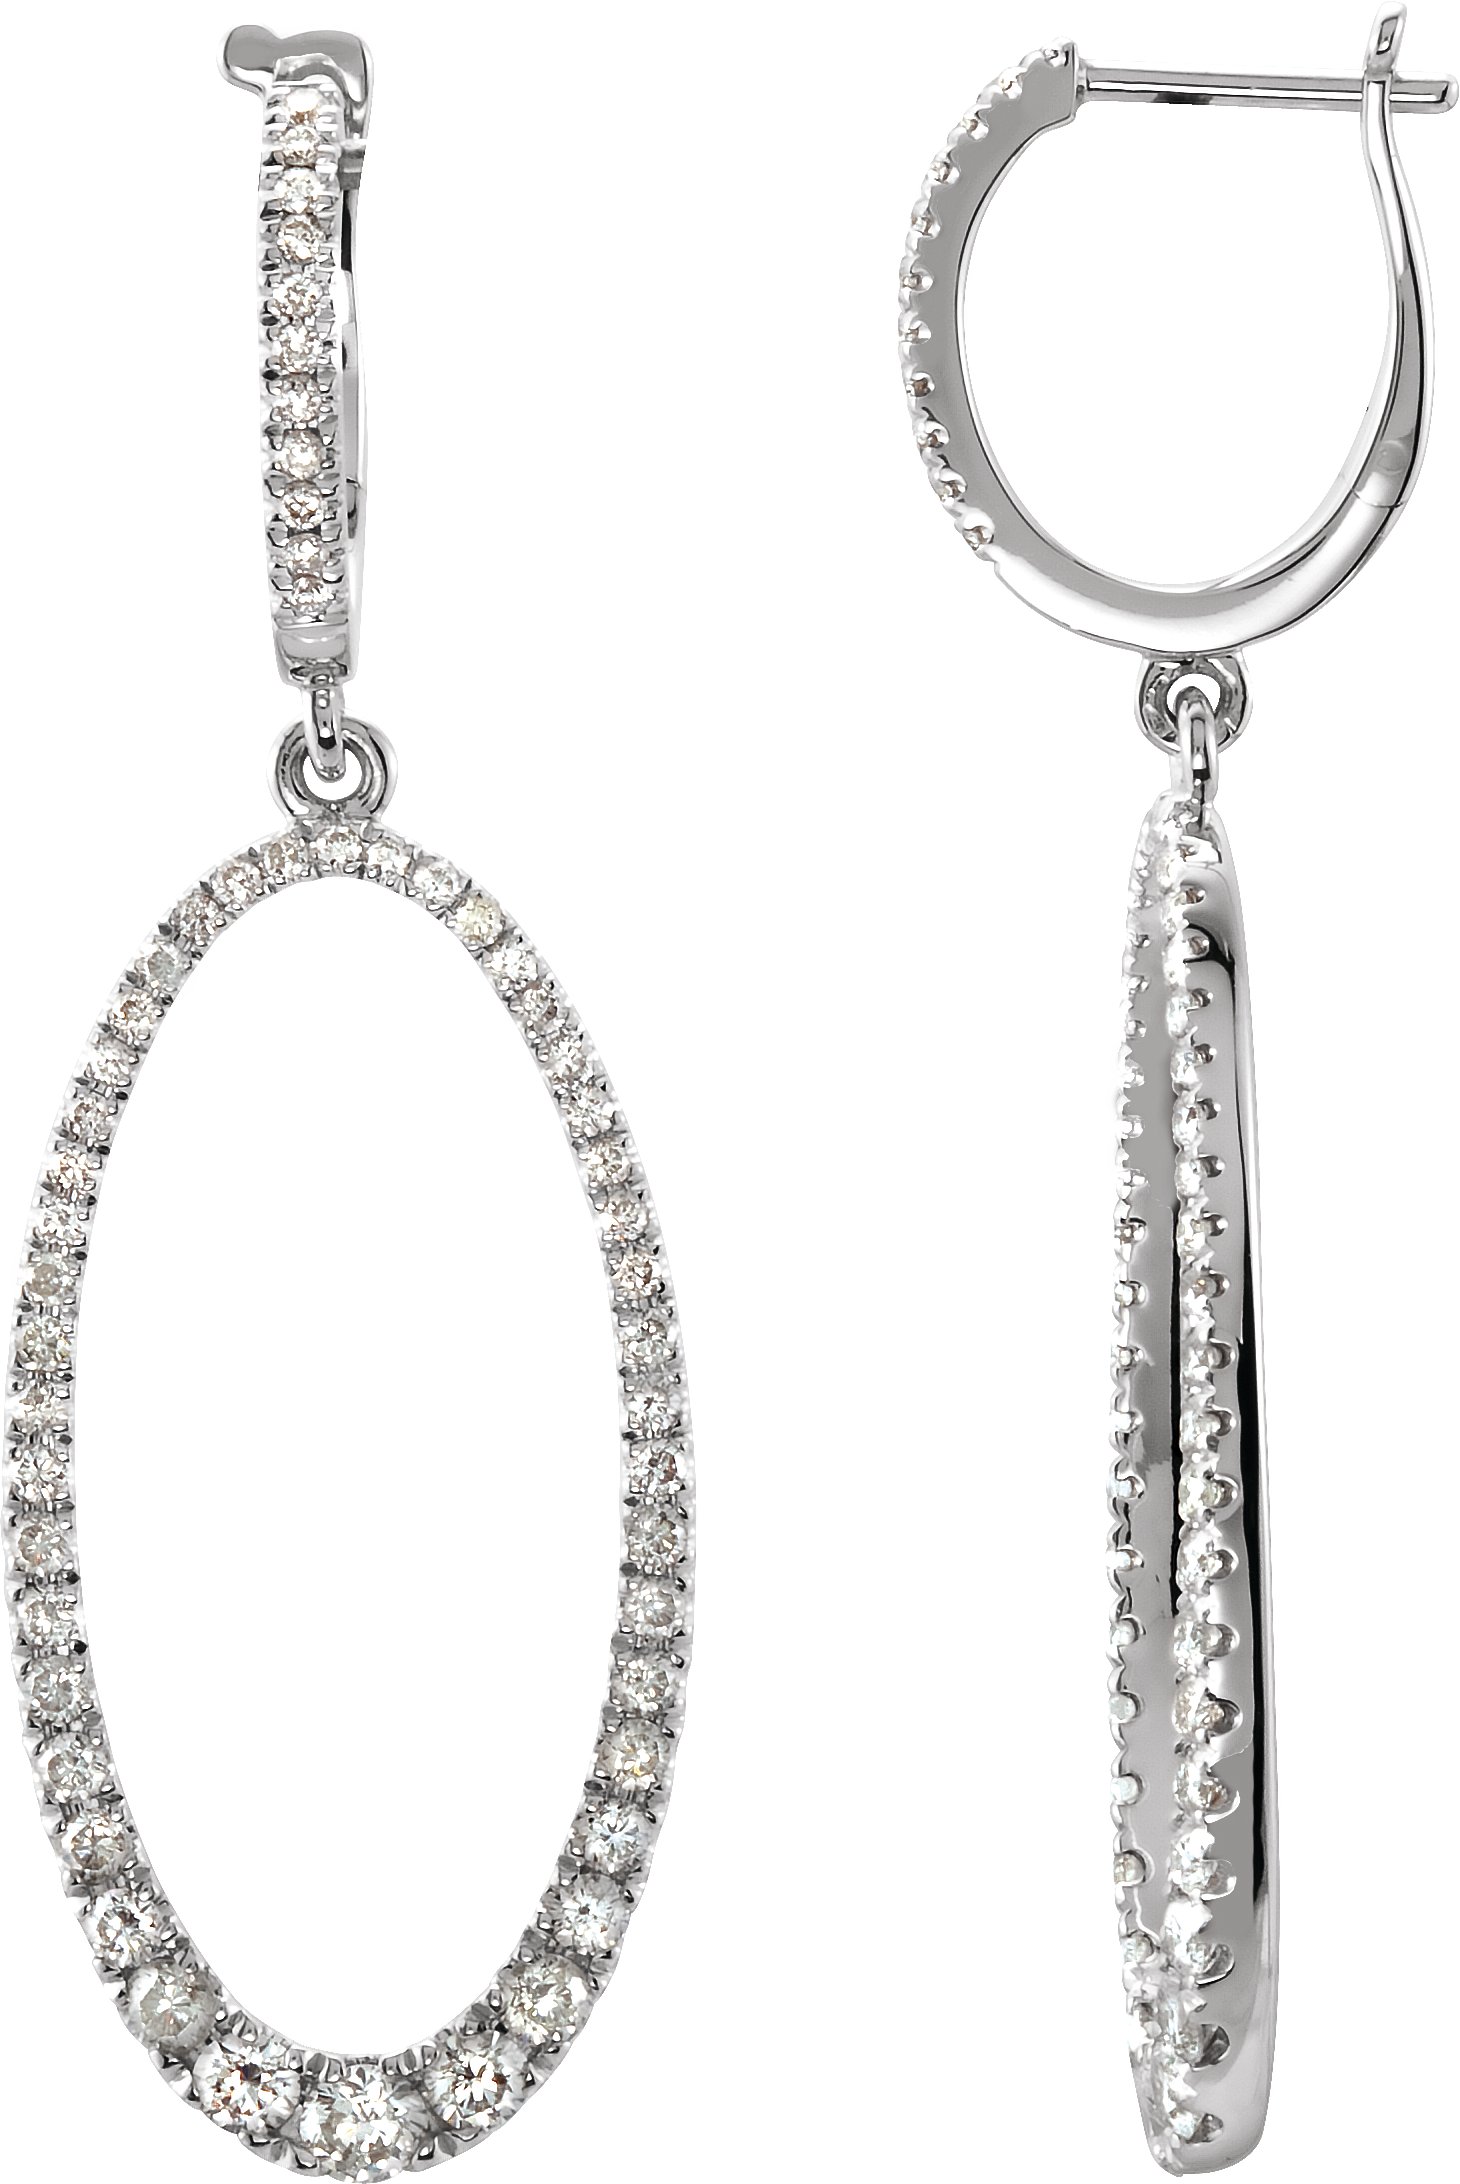 14K White 1 1/4 CTW Diamond Oval Silhouette Earrings 